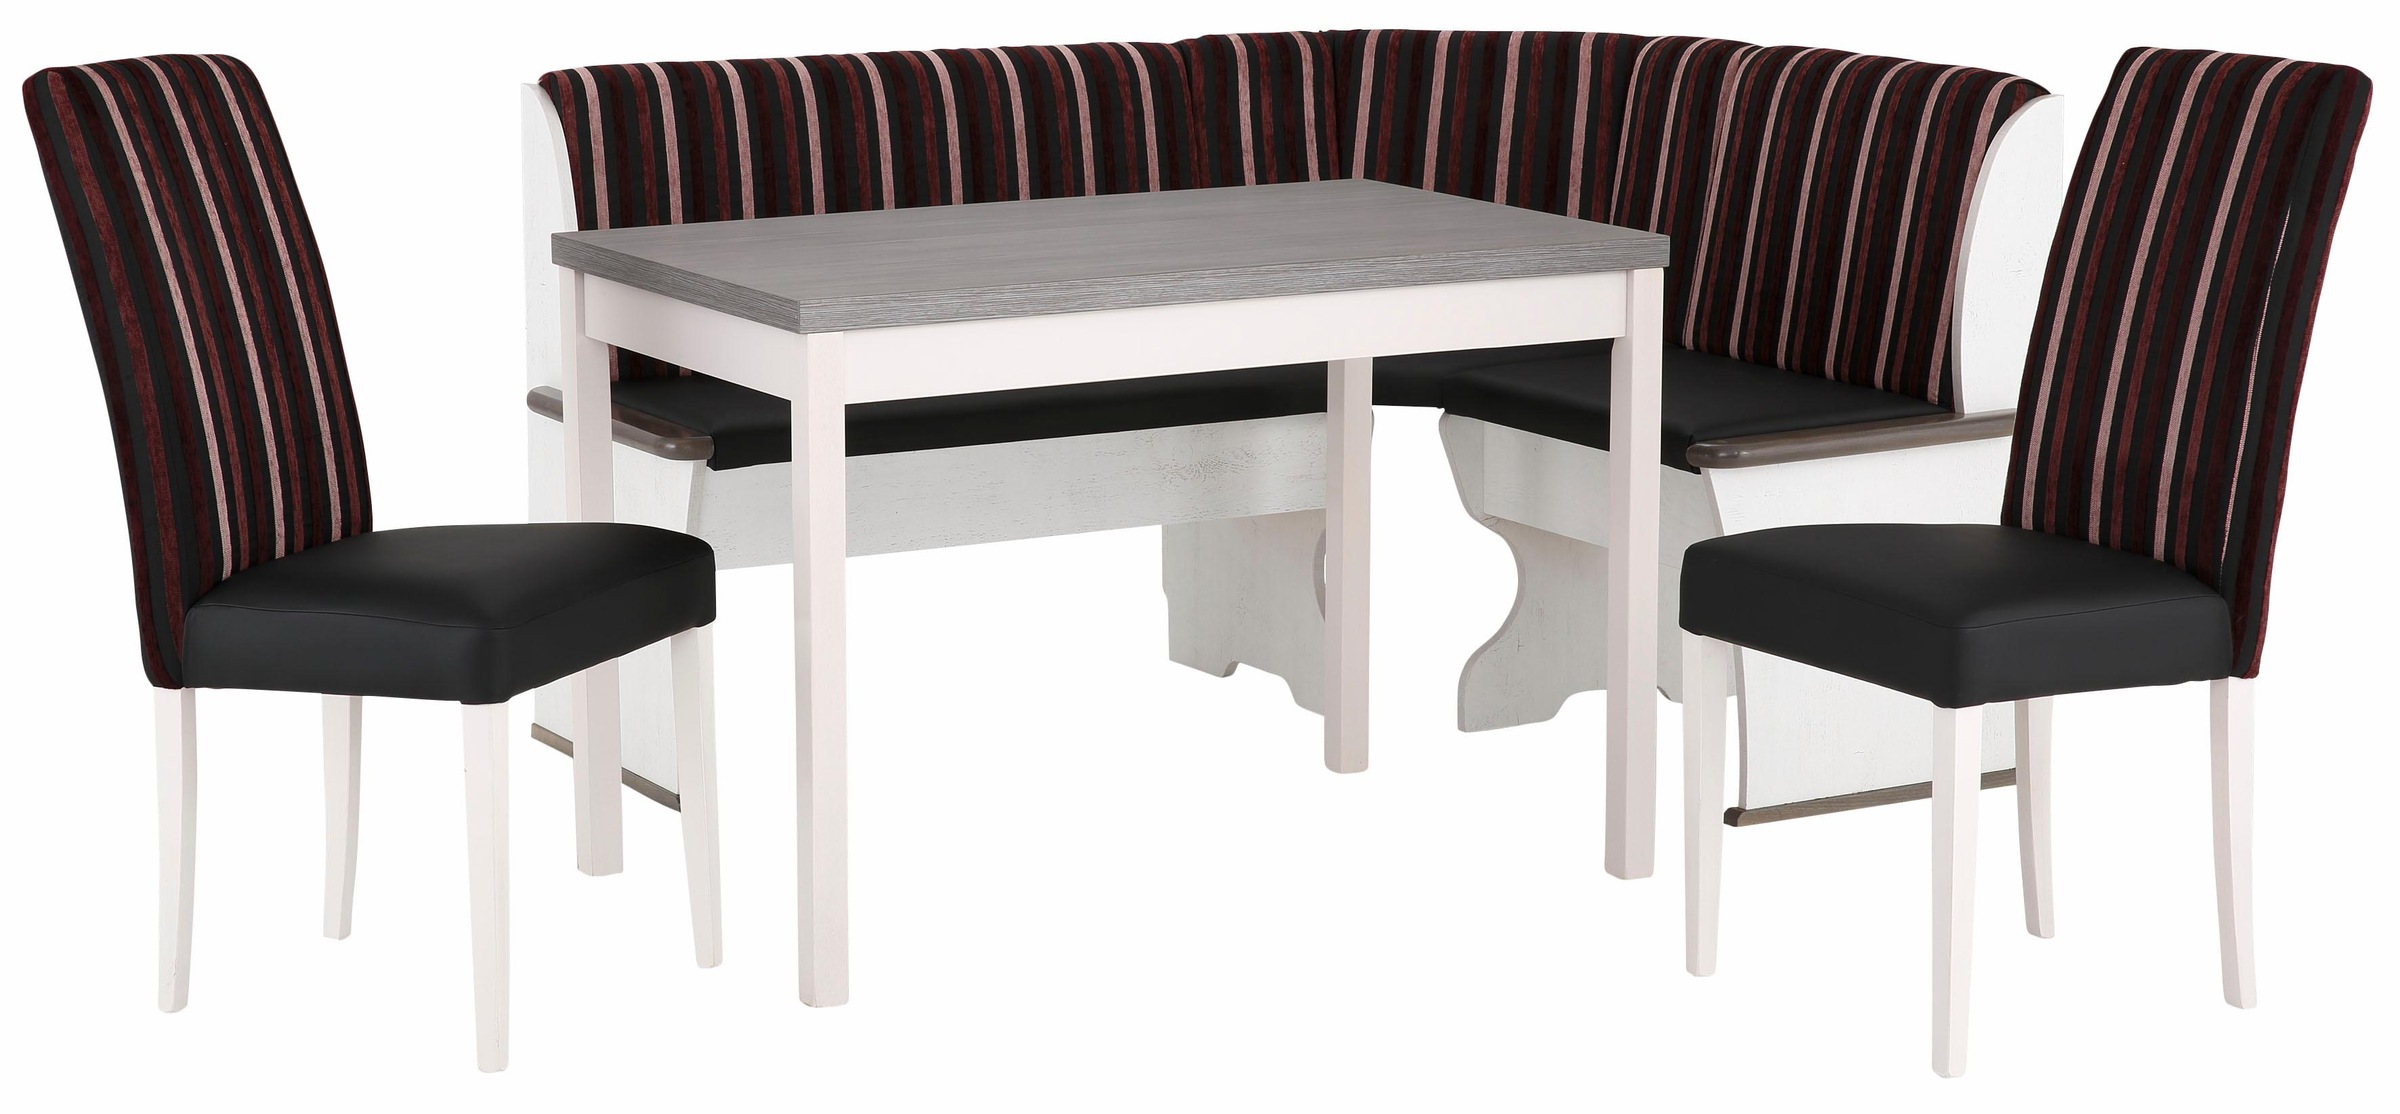 Home affaire Essgruppe »Denis«, (Set, 3 tlg.), Set bestehend aus Essbank, Tisch und 2 Stühlen